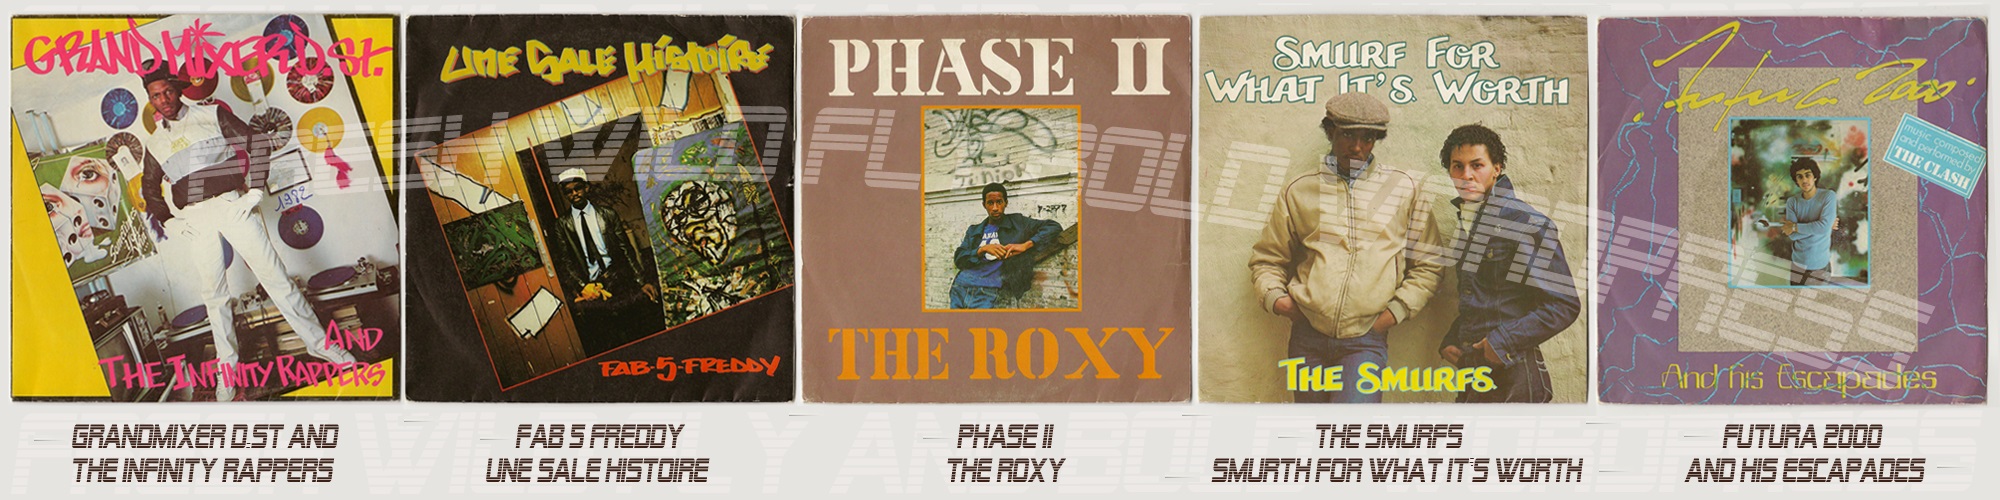 Un vecchio vinile di Phase II, The Roxy